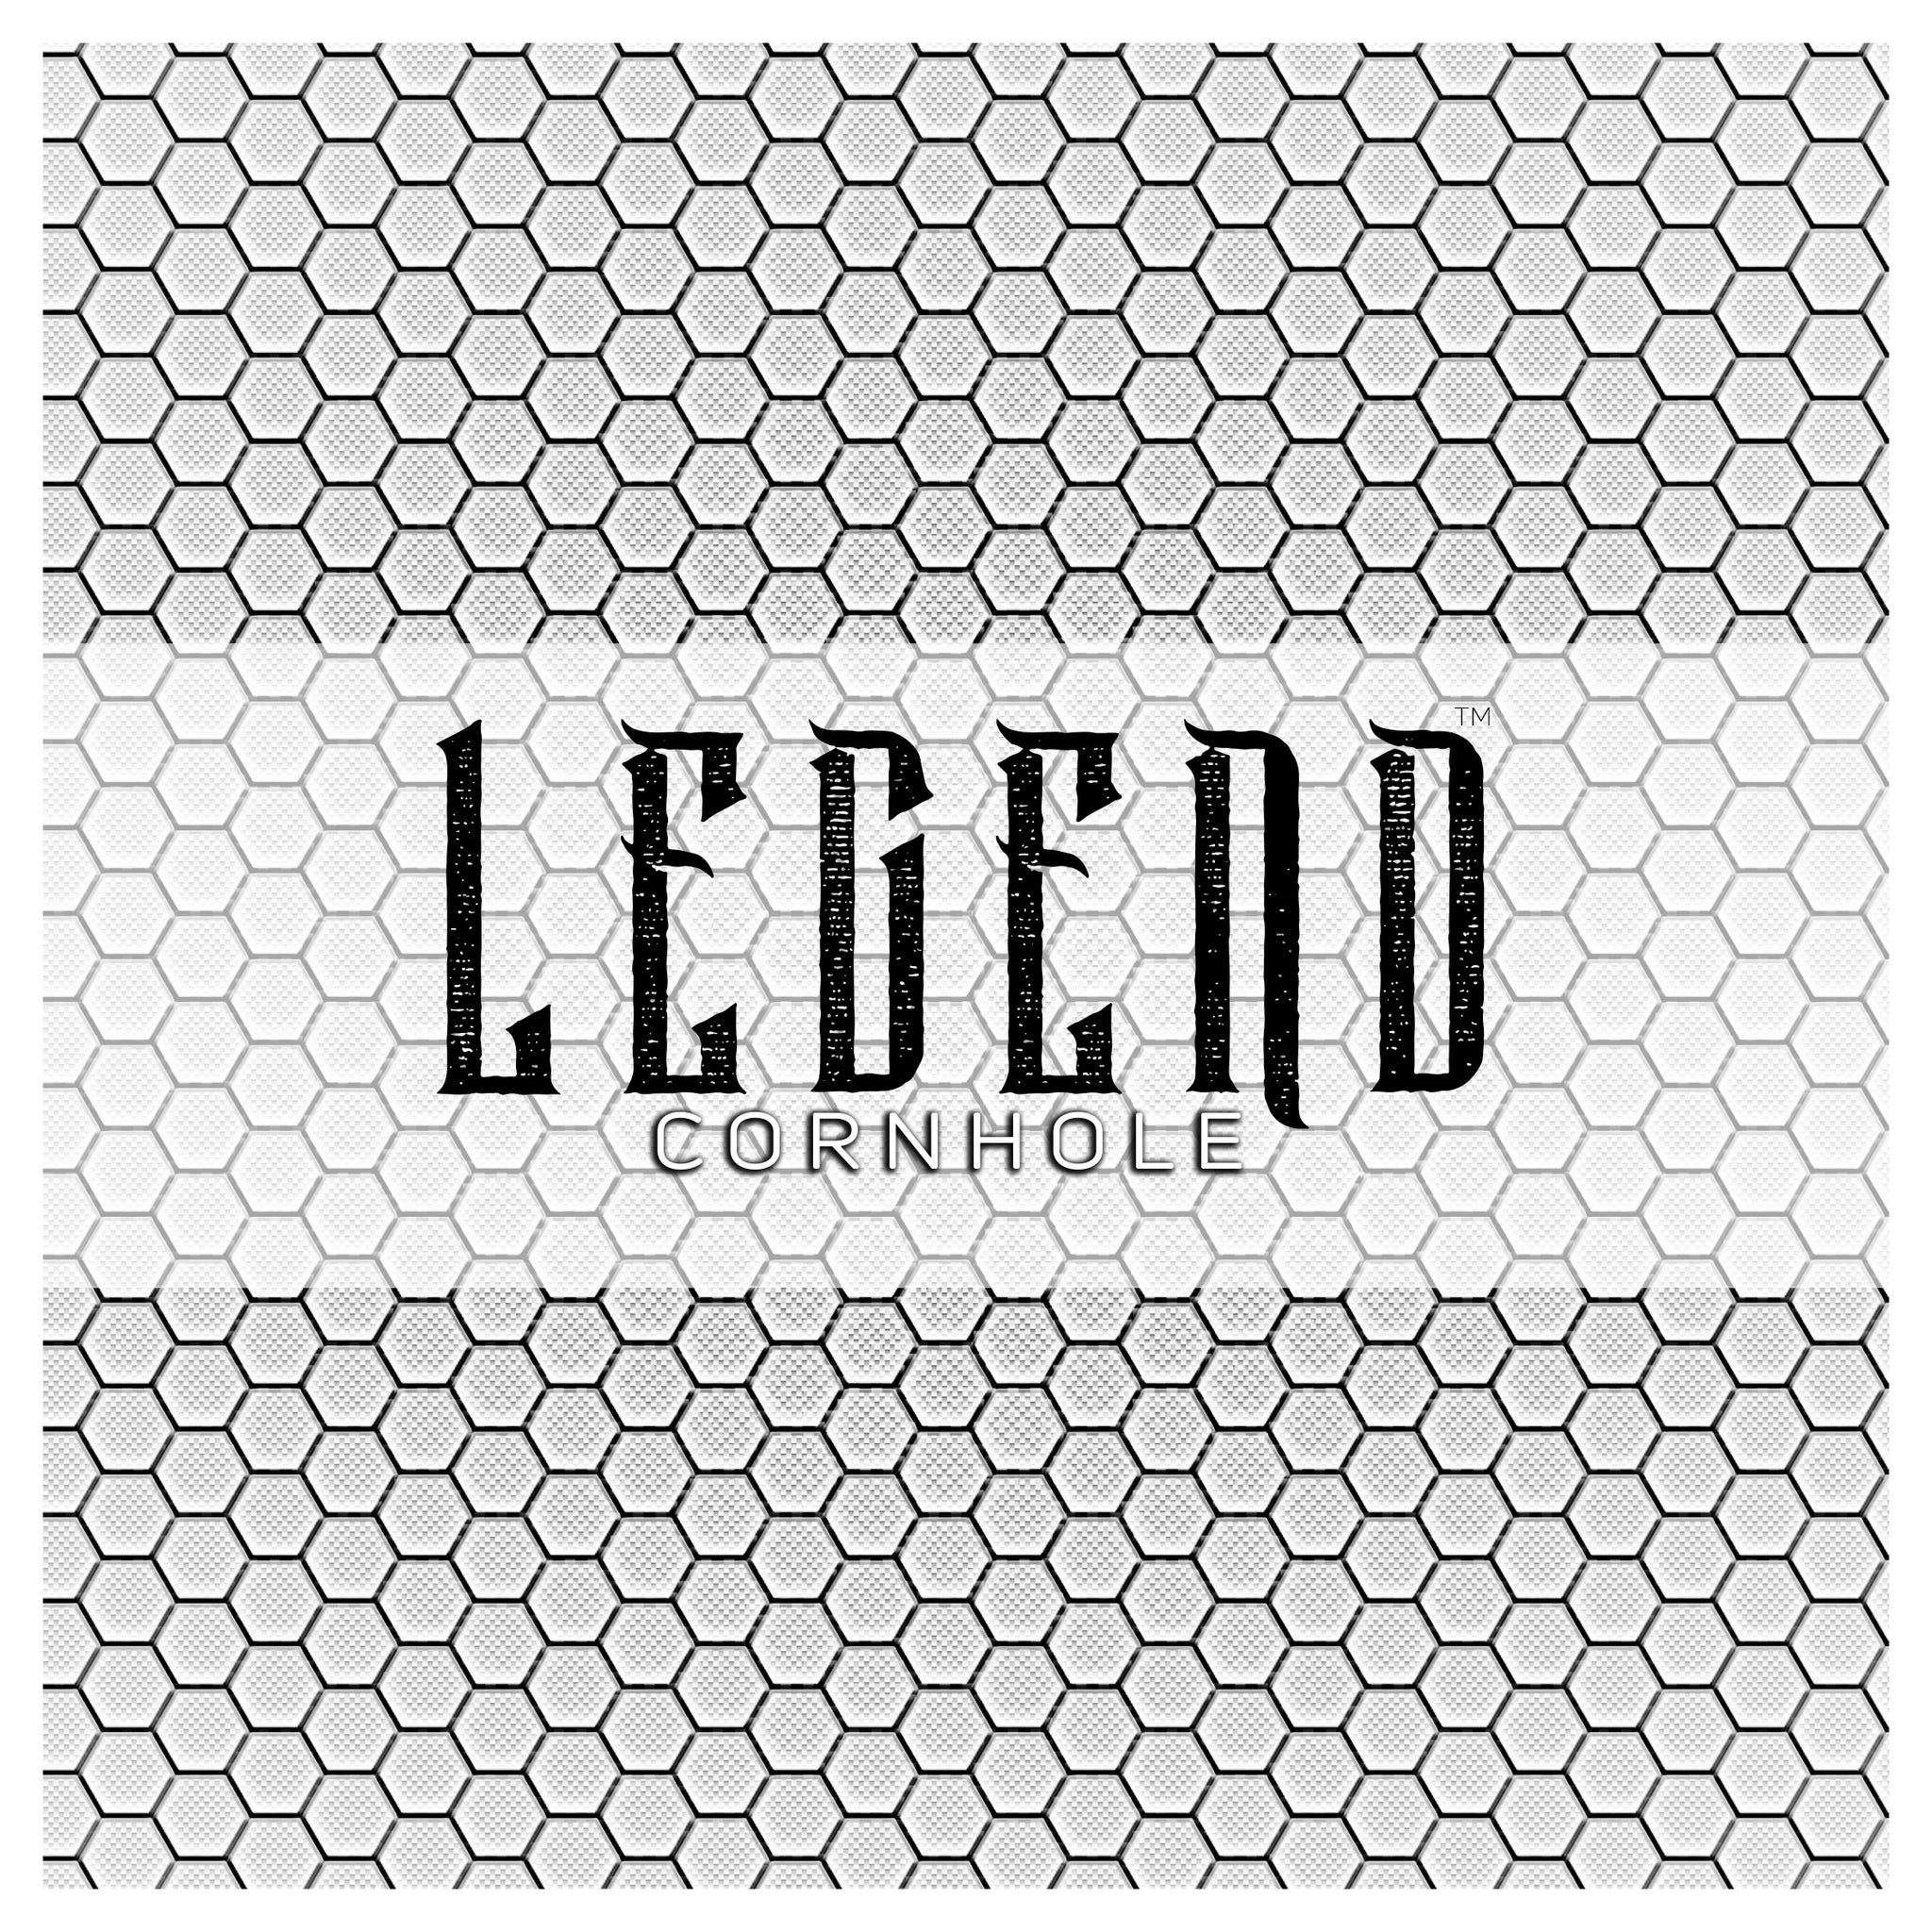 Legend™ "ALL IN™" Premium Cornhole Bag (set of 4)